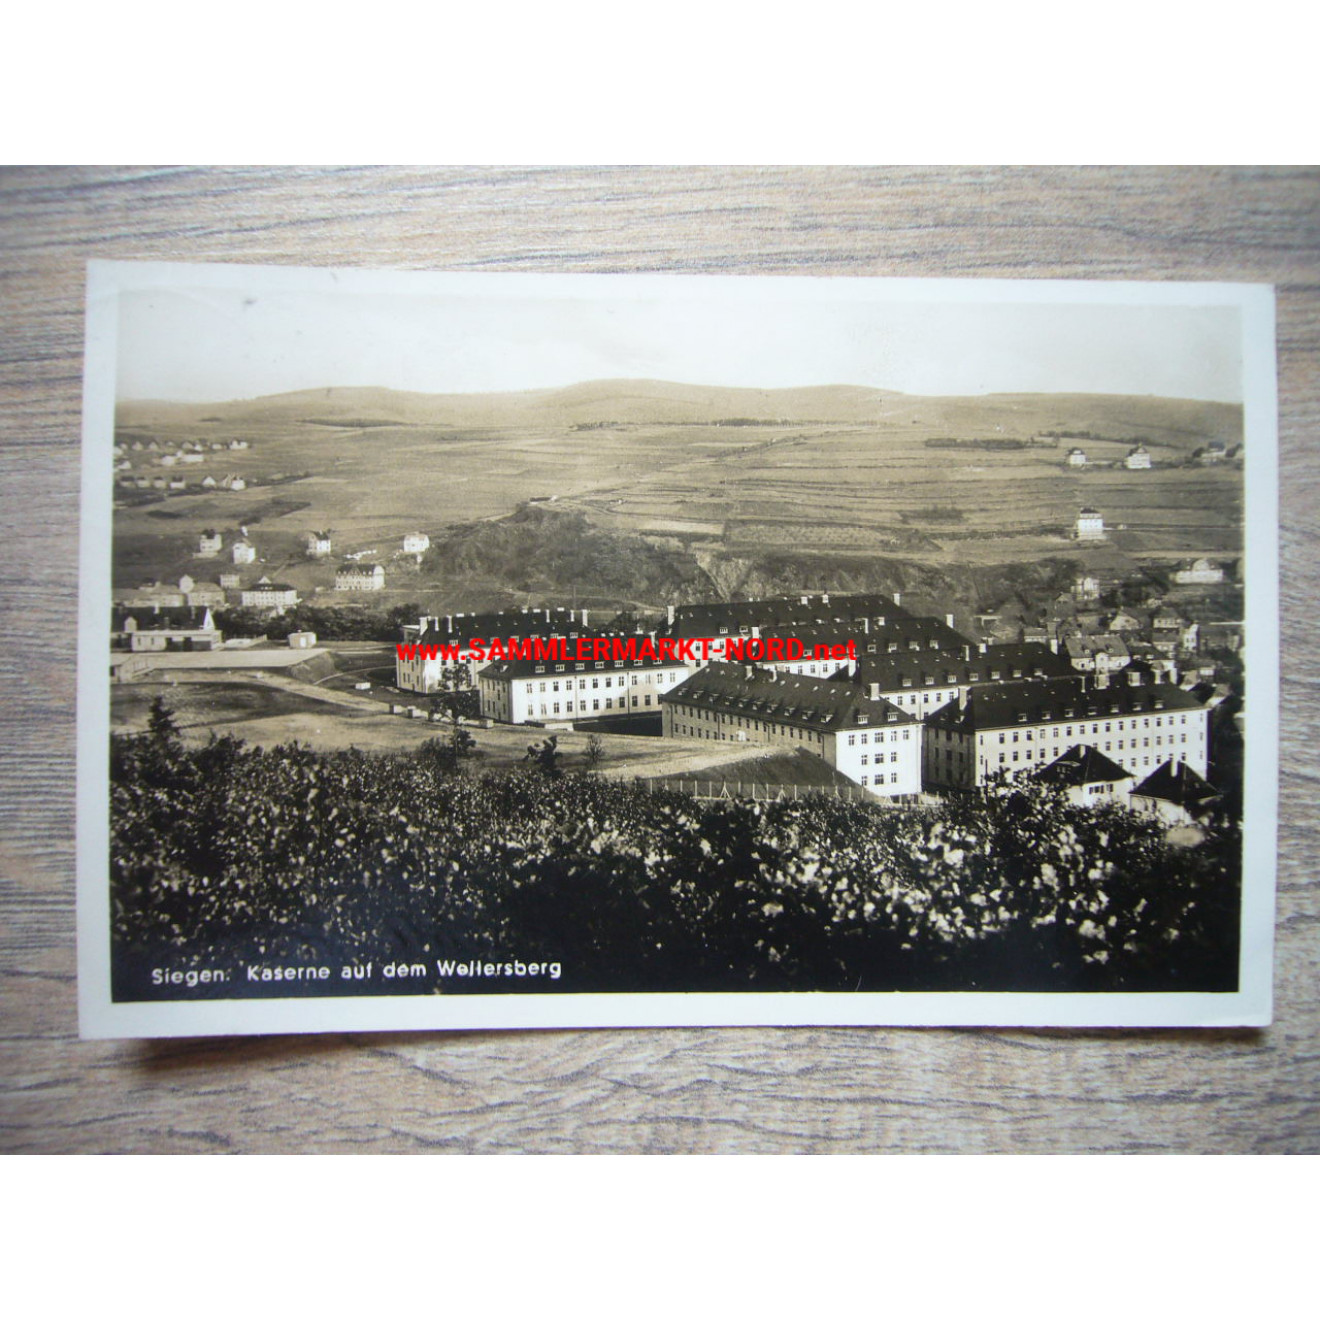 Siegen - Kaserne auf dem Wellersberg - Postkarte